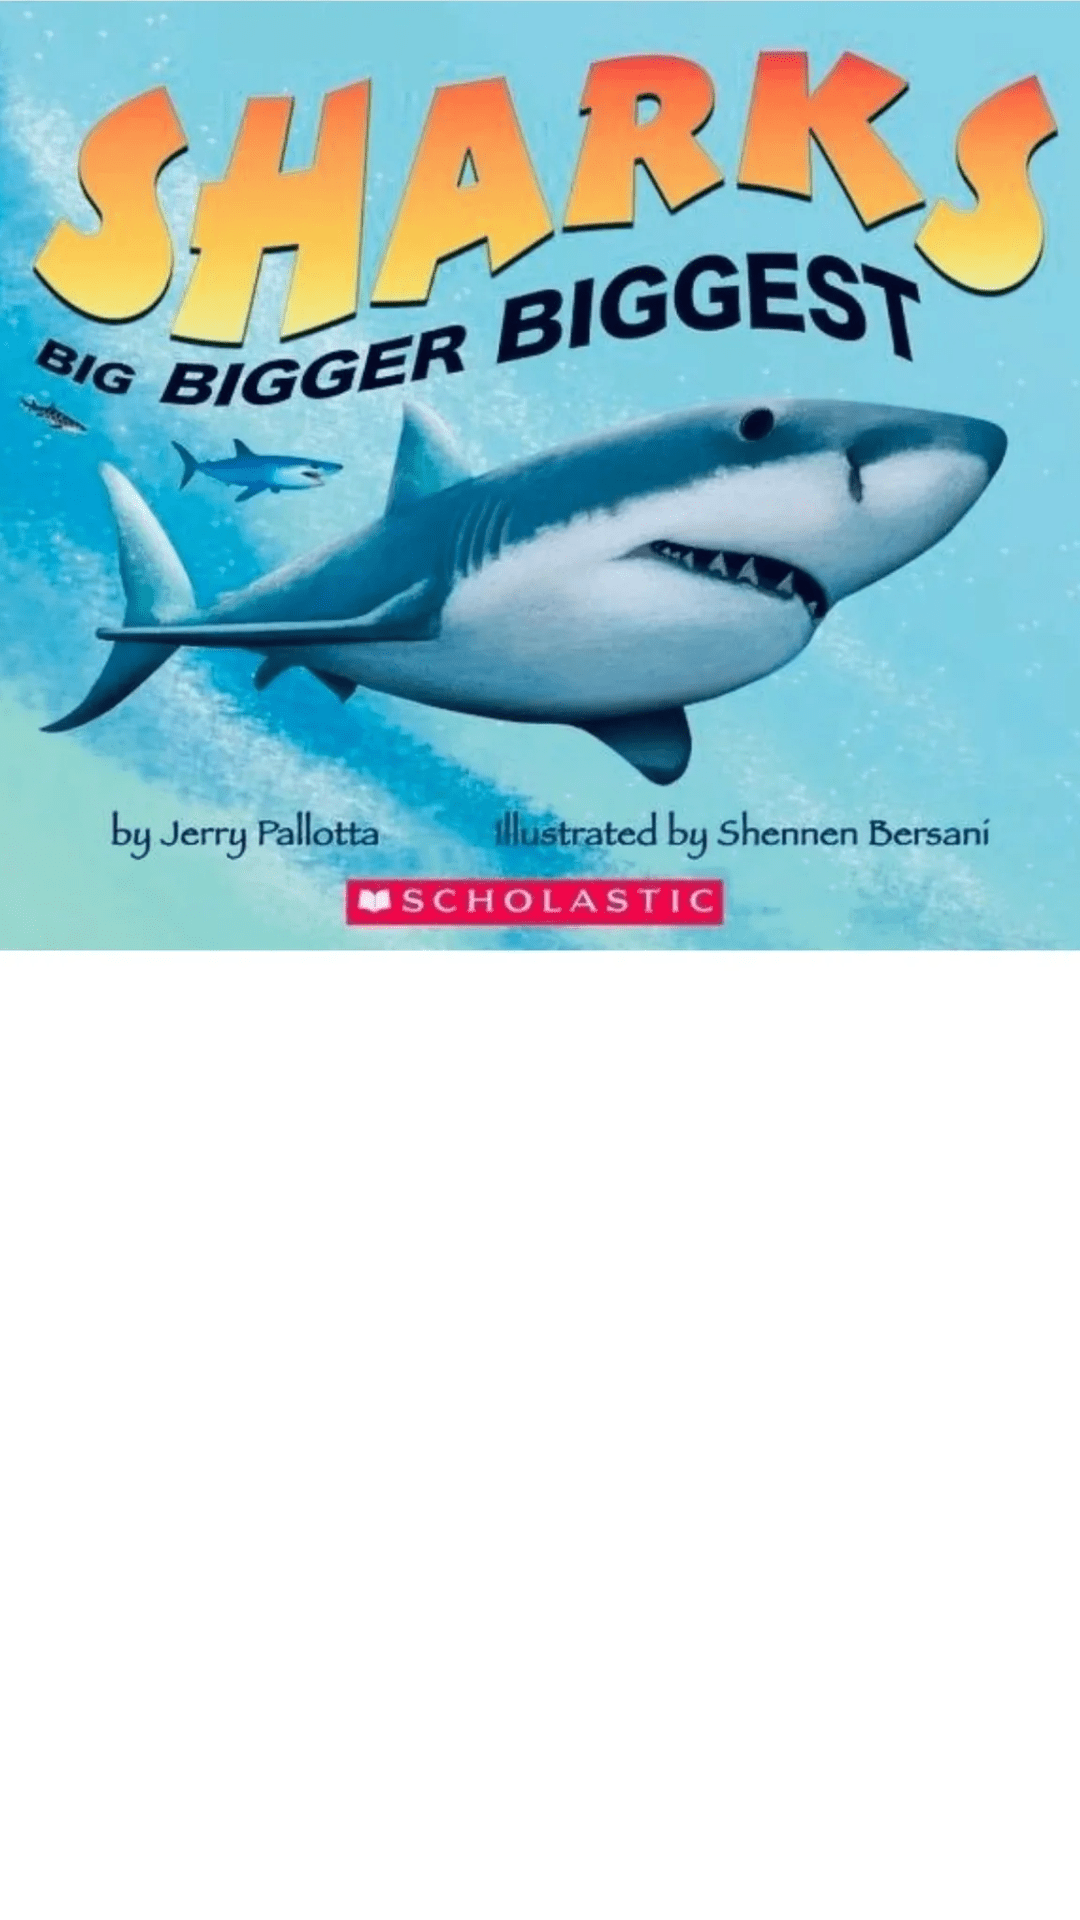 Sharks: Big Bigger Biggest